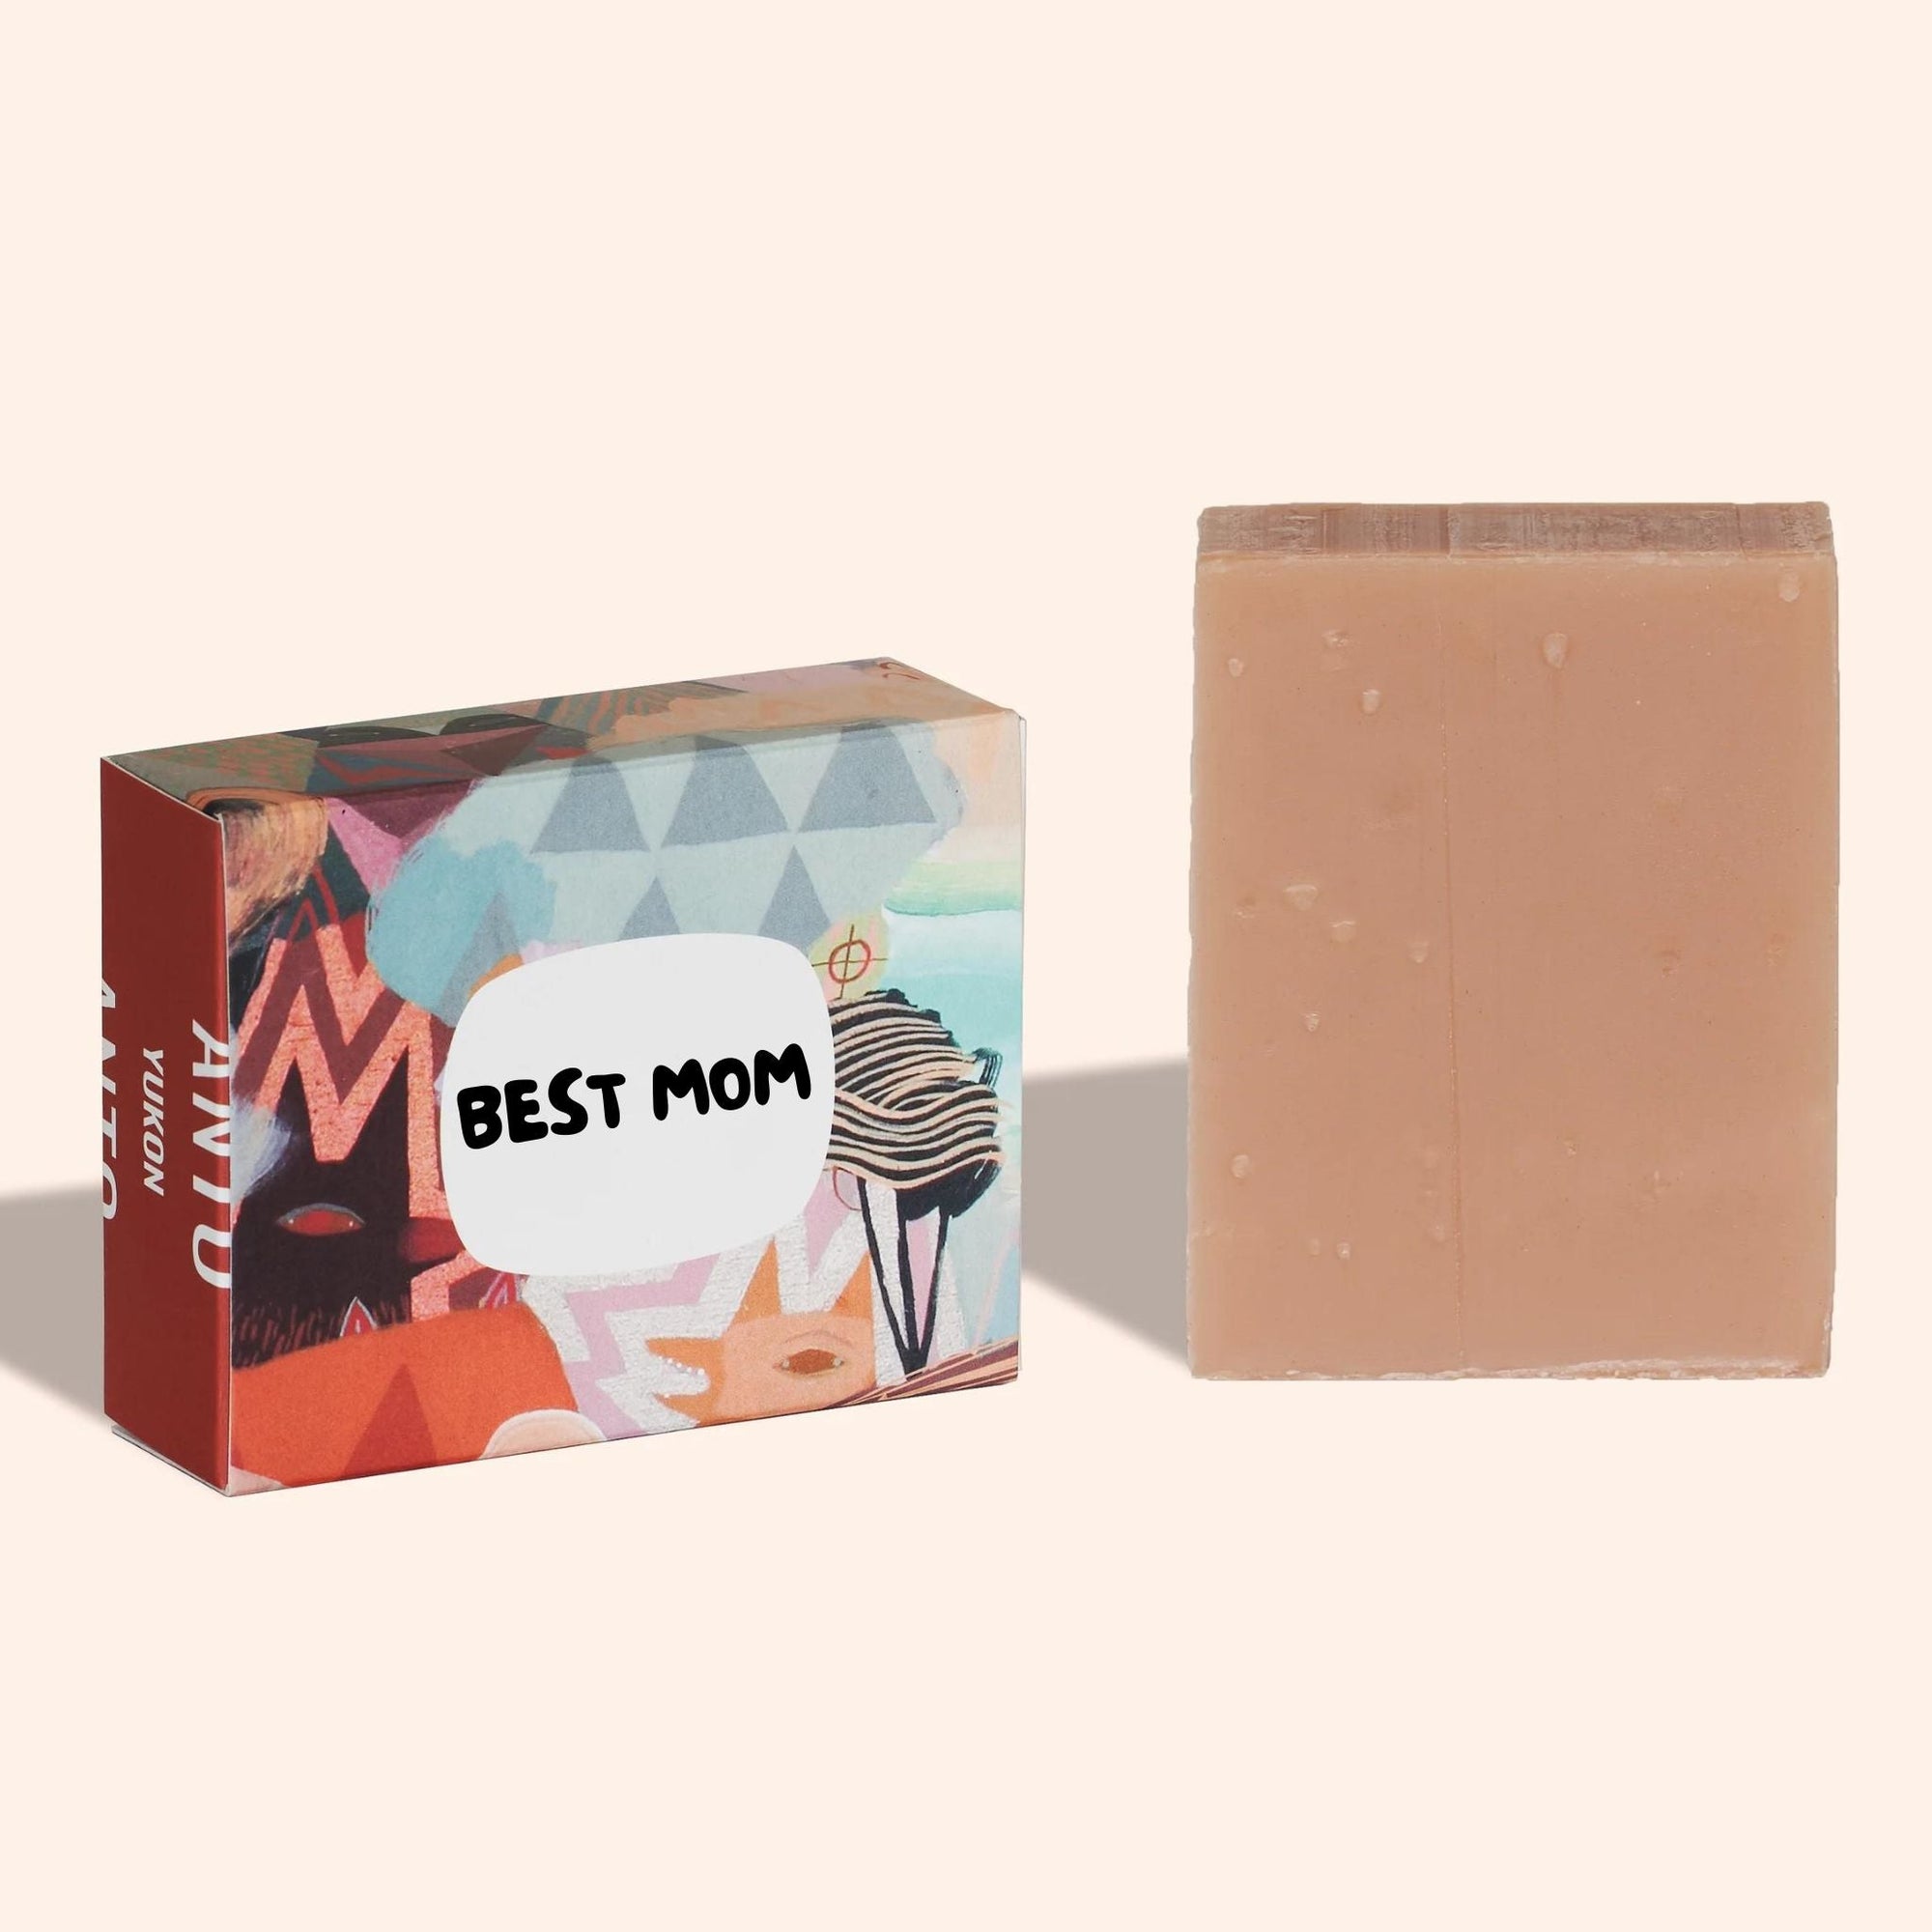 Anto Yukon - Anto Yukon Best Mom Cedar + Rose Soap - ORESTA clean beauty simplified